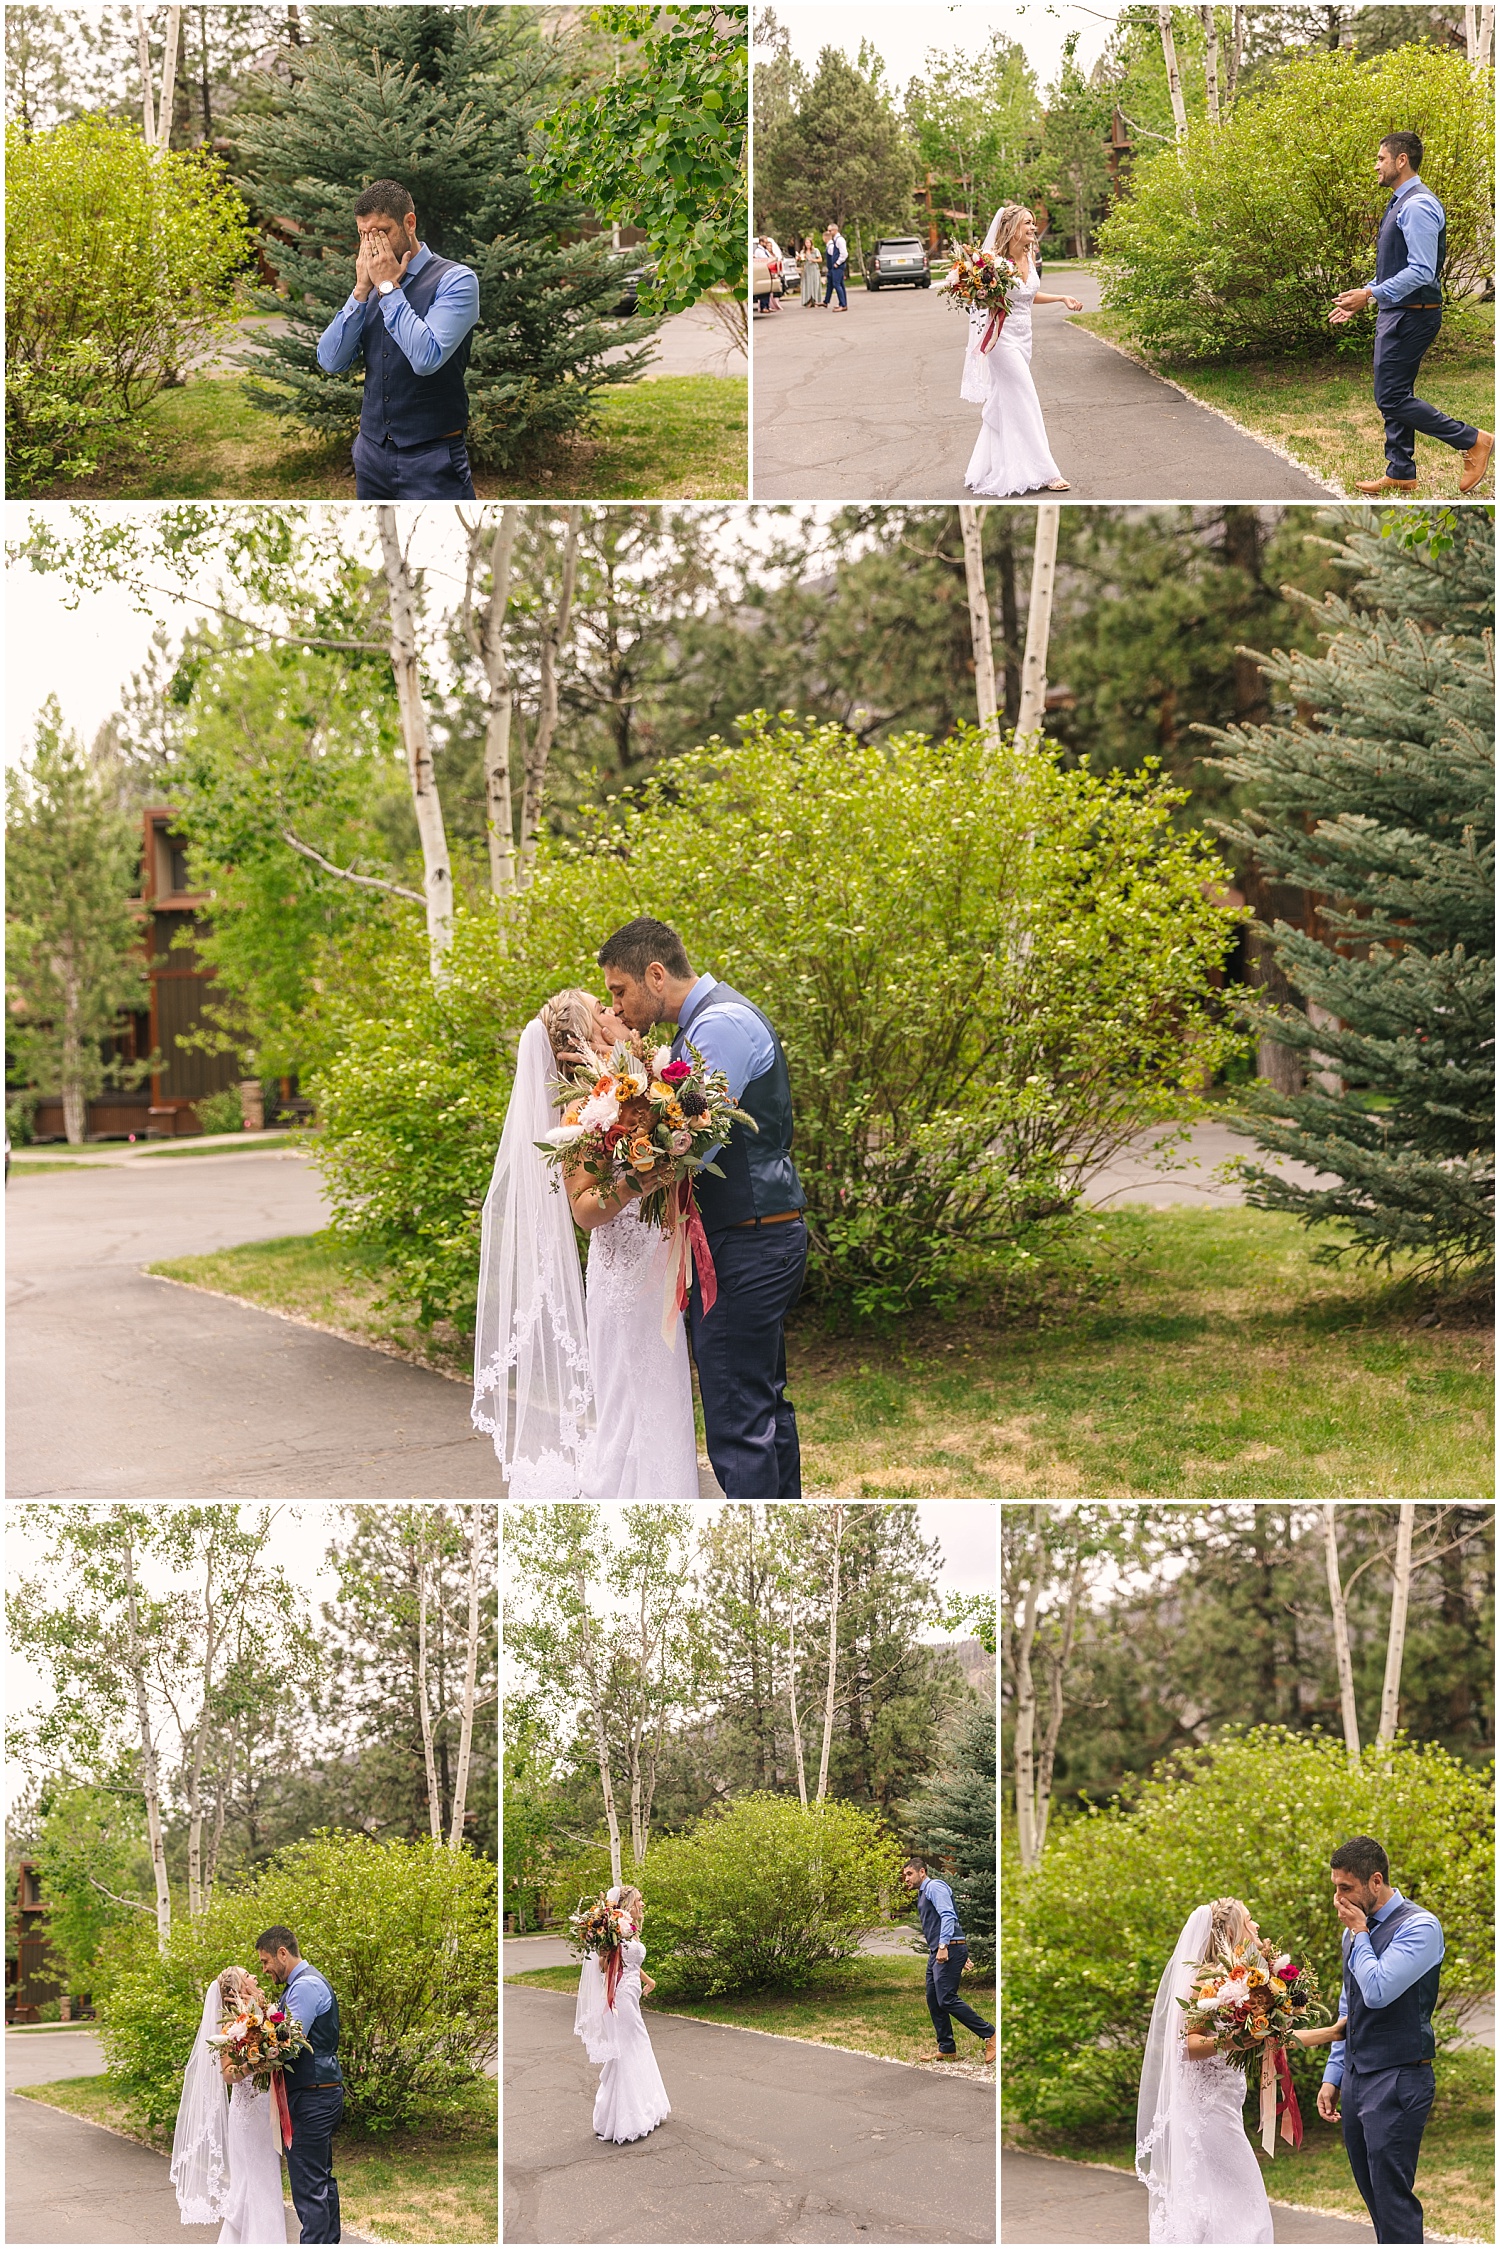 Bride and groom's first look before wedding at Glacier Club in Durango Colorado